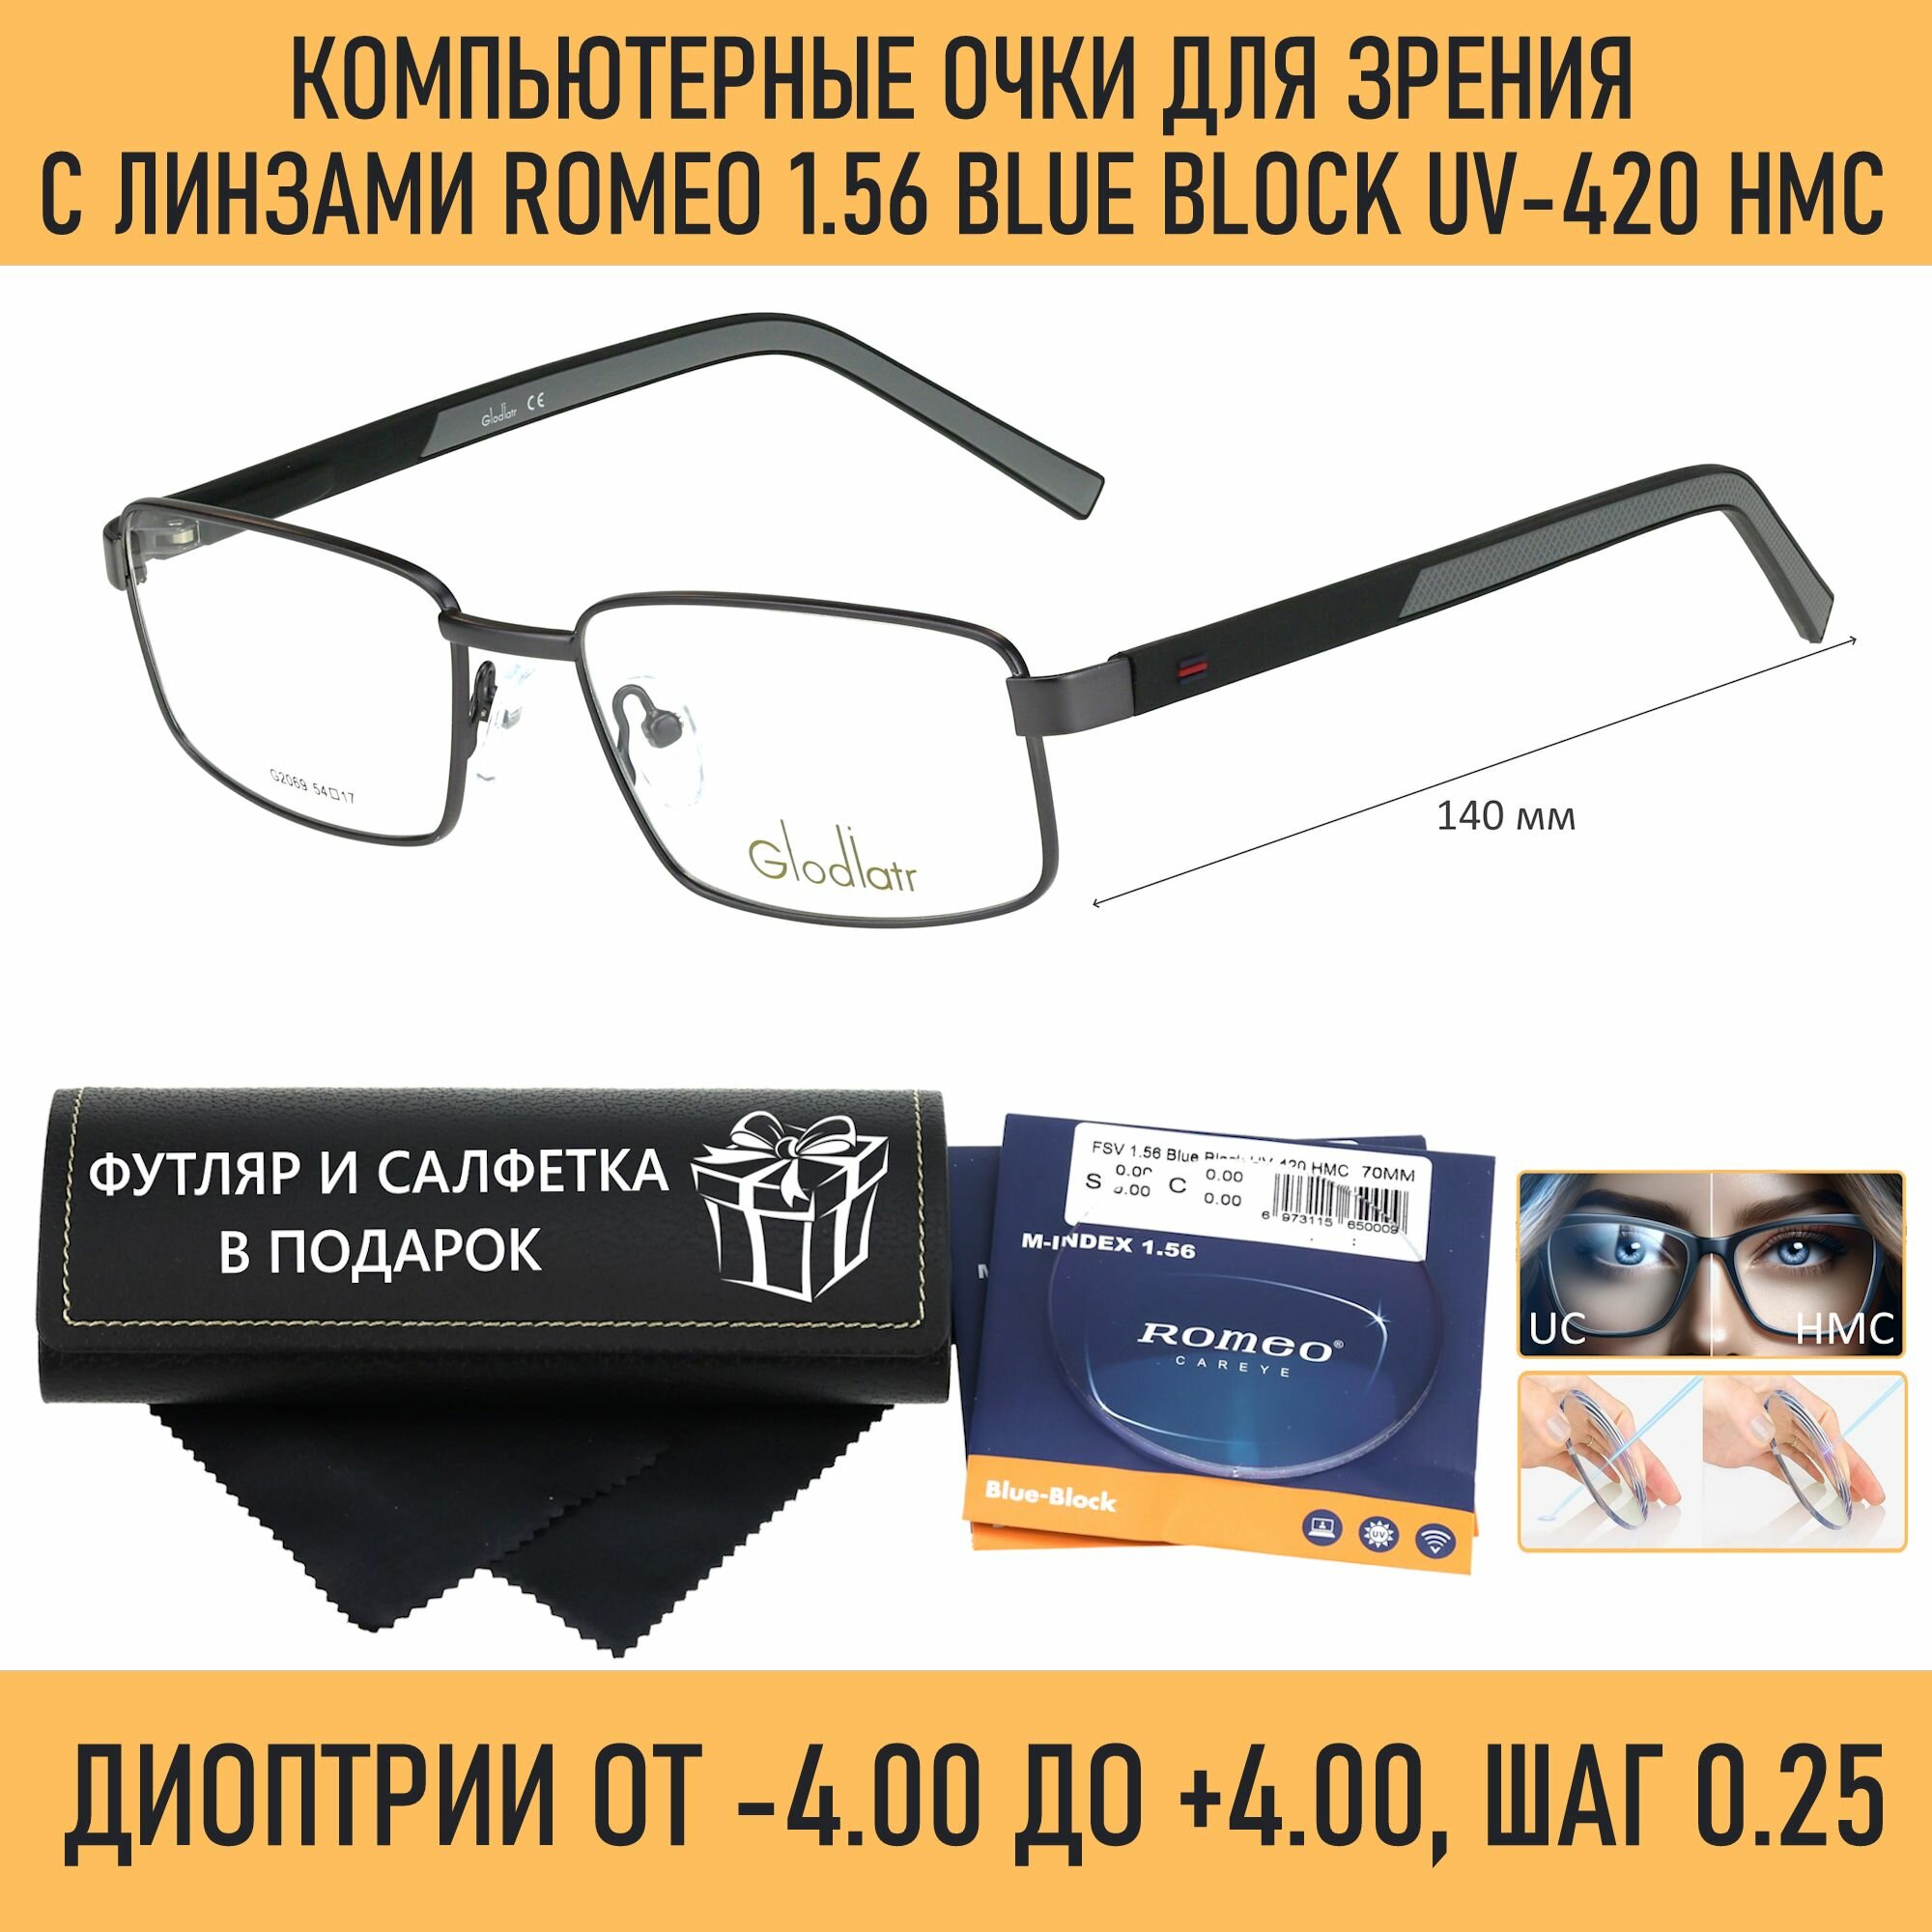 Компьютерные очки для чтения с футляром на магните GLODIATR мод. 2069 Цвет 3 с линзами ROMEO 1.56 Blue Block +0.25 РЦ 64-66